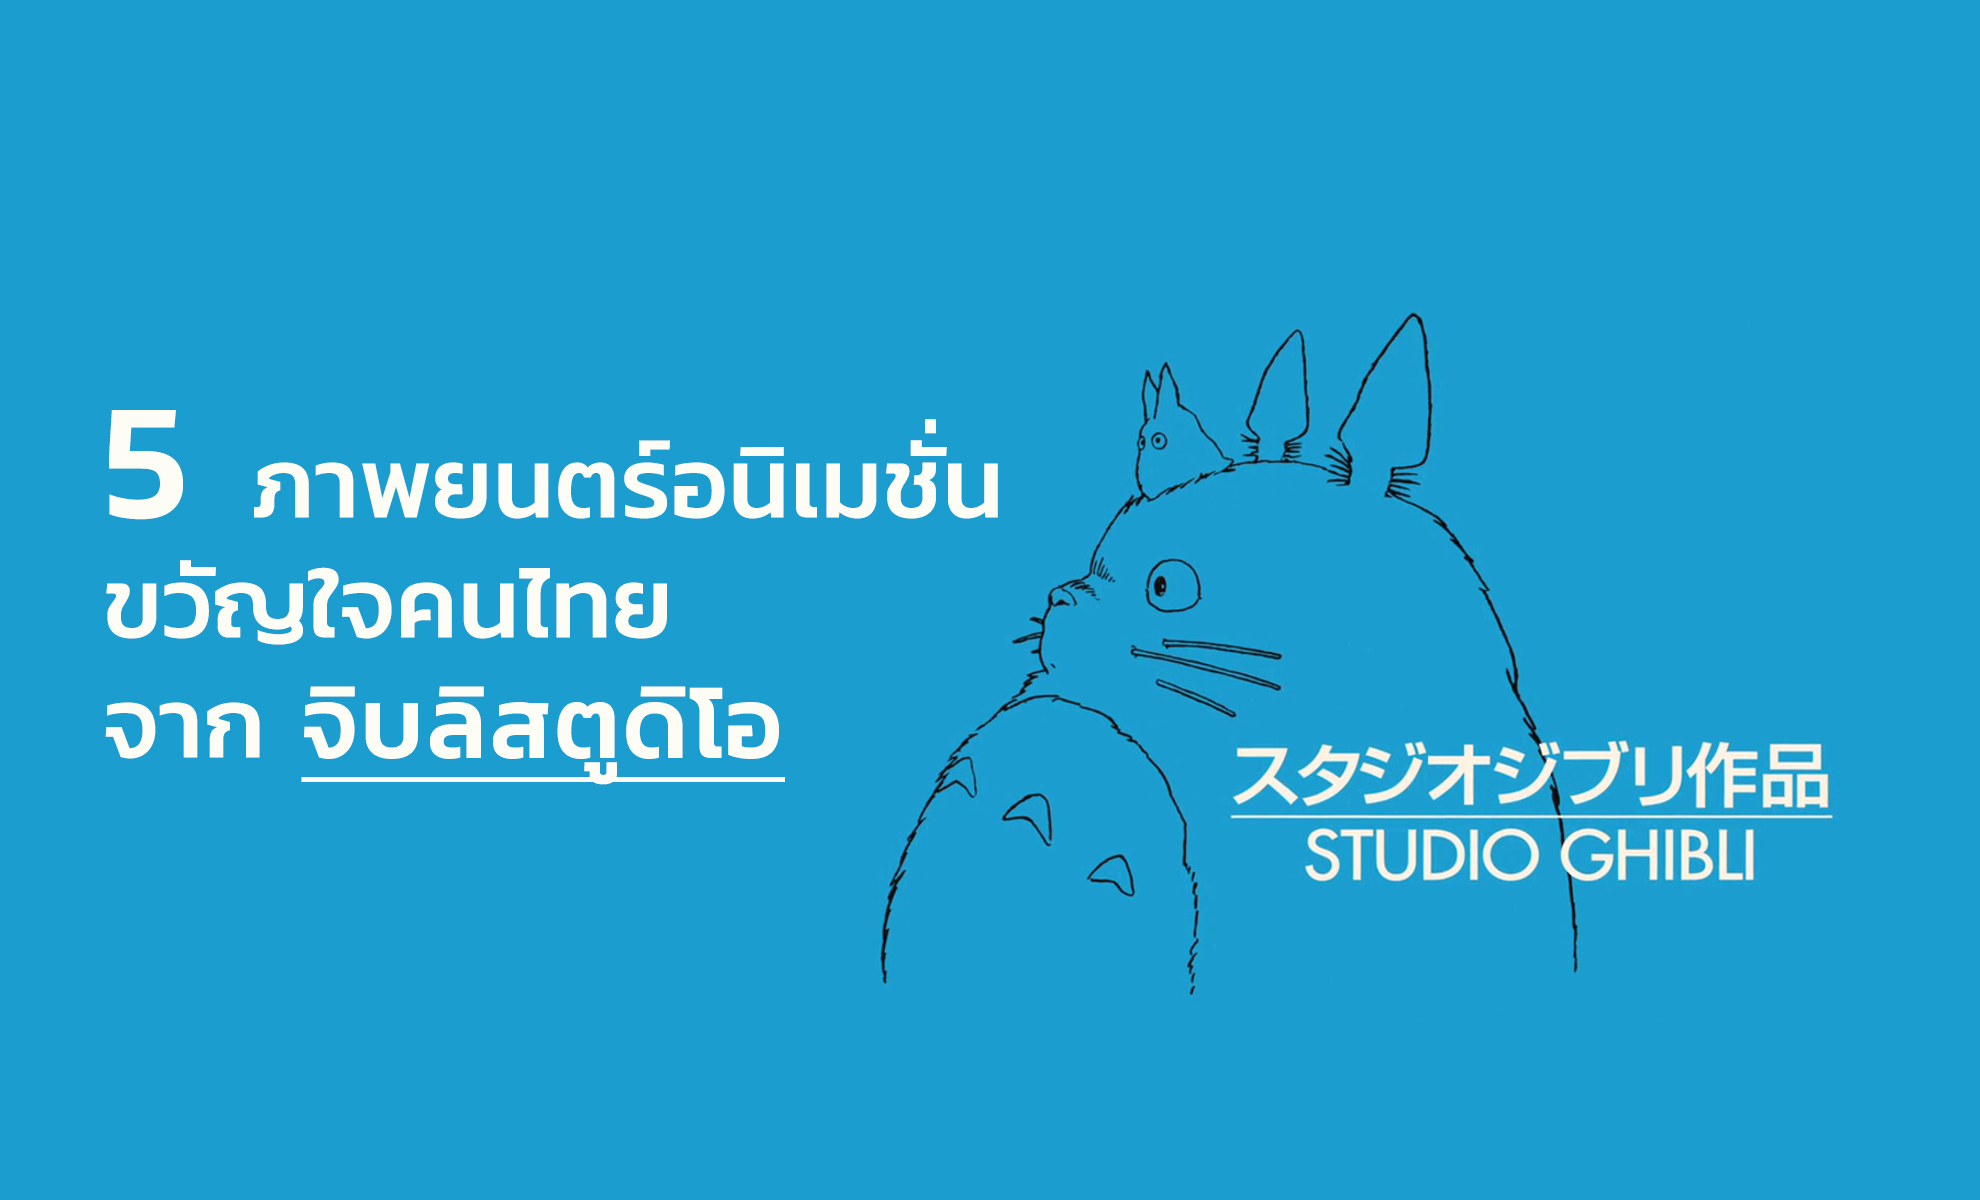 ชวนคอการ์ตูนดู 5 ภาพยนตร์อนิเมชั่น ขวัญใจคนไทย จาก จิบลิสตูดิโอ